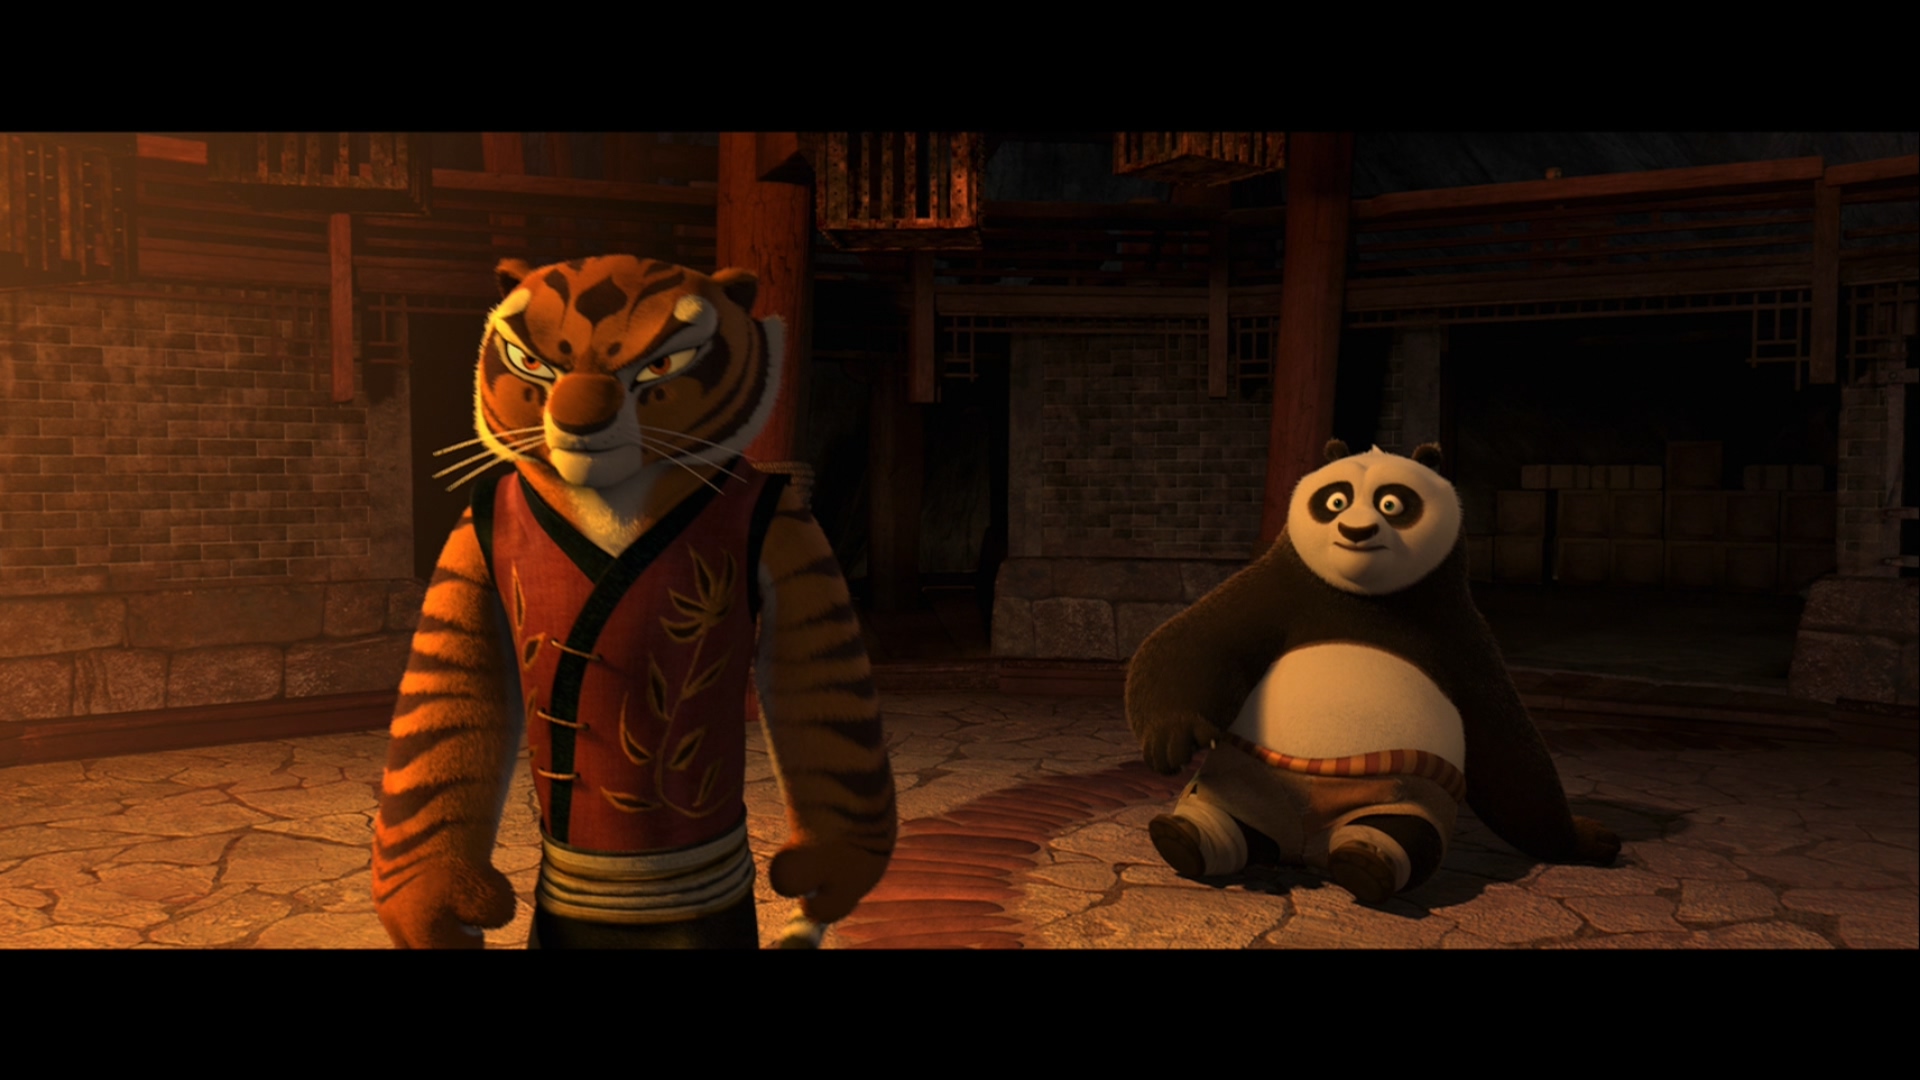 [功夫熊猫2].Kung.Fu.Panda.2.2011.3D.BluRay.1080p.AVC.TrueHD.7.1-LKS   35.53G$  q/ D/ W- f7 C. W0 ~6 s-12.jpg